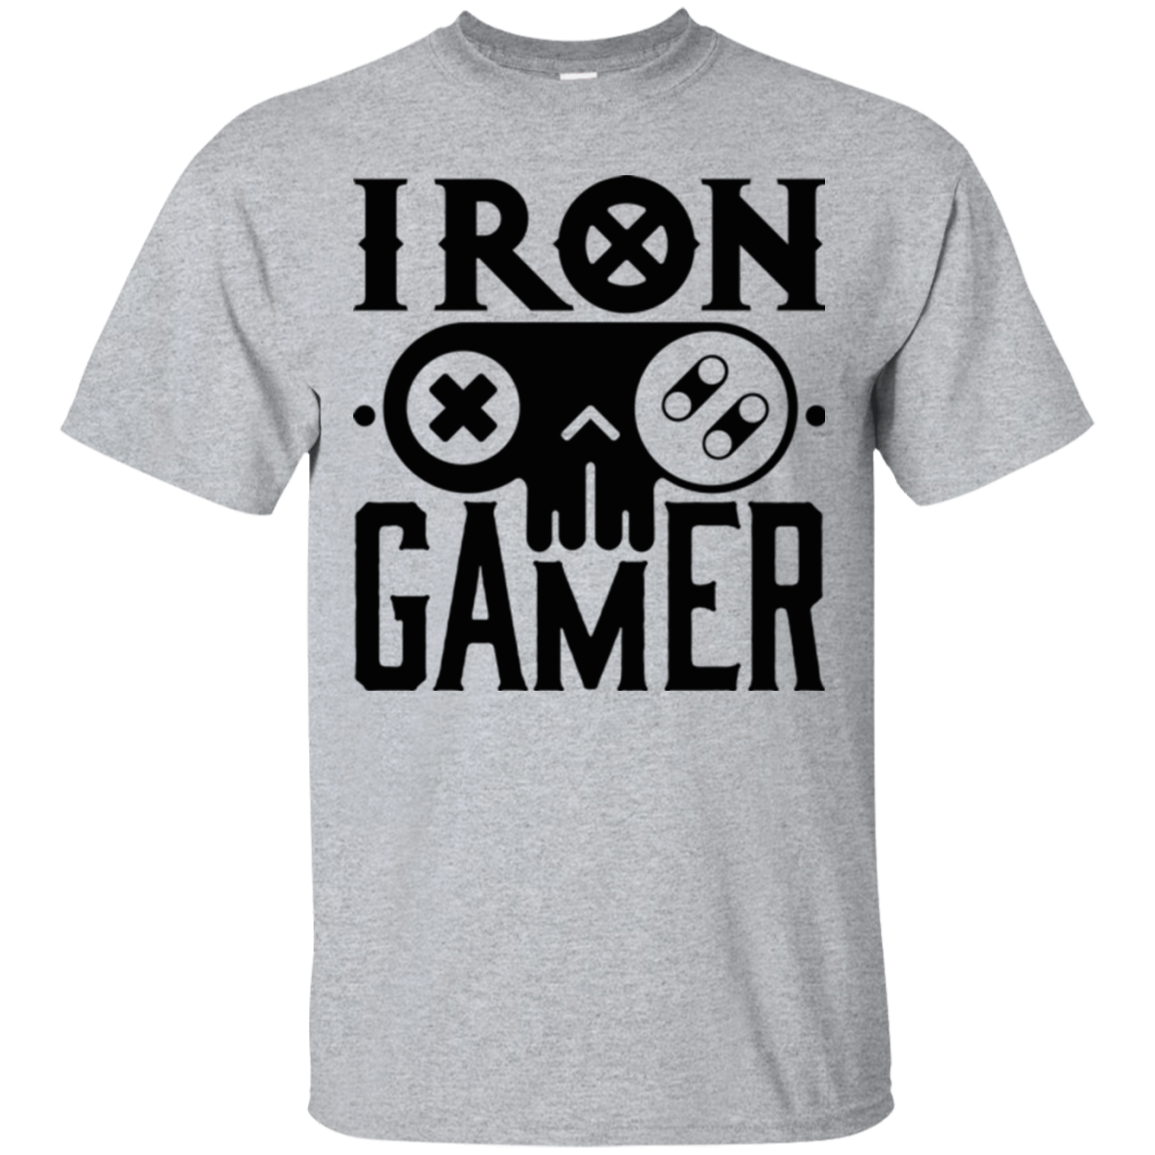 Iron Gamer T-Shirt